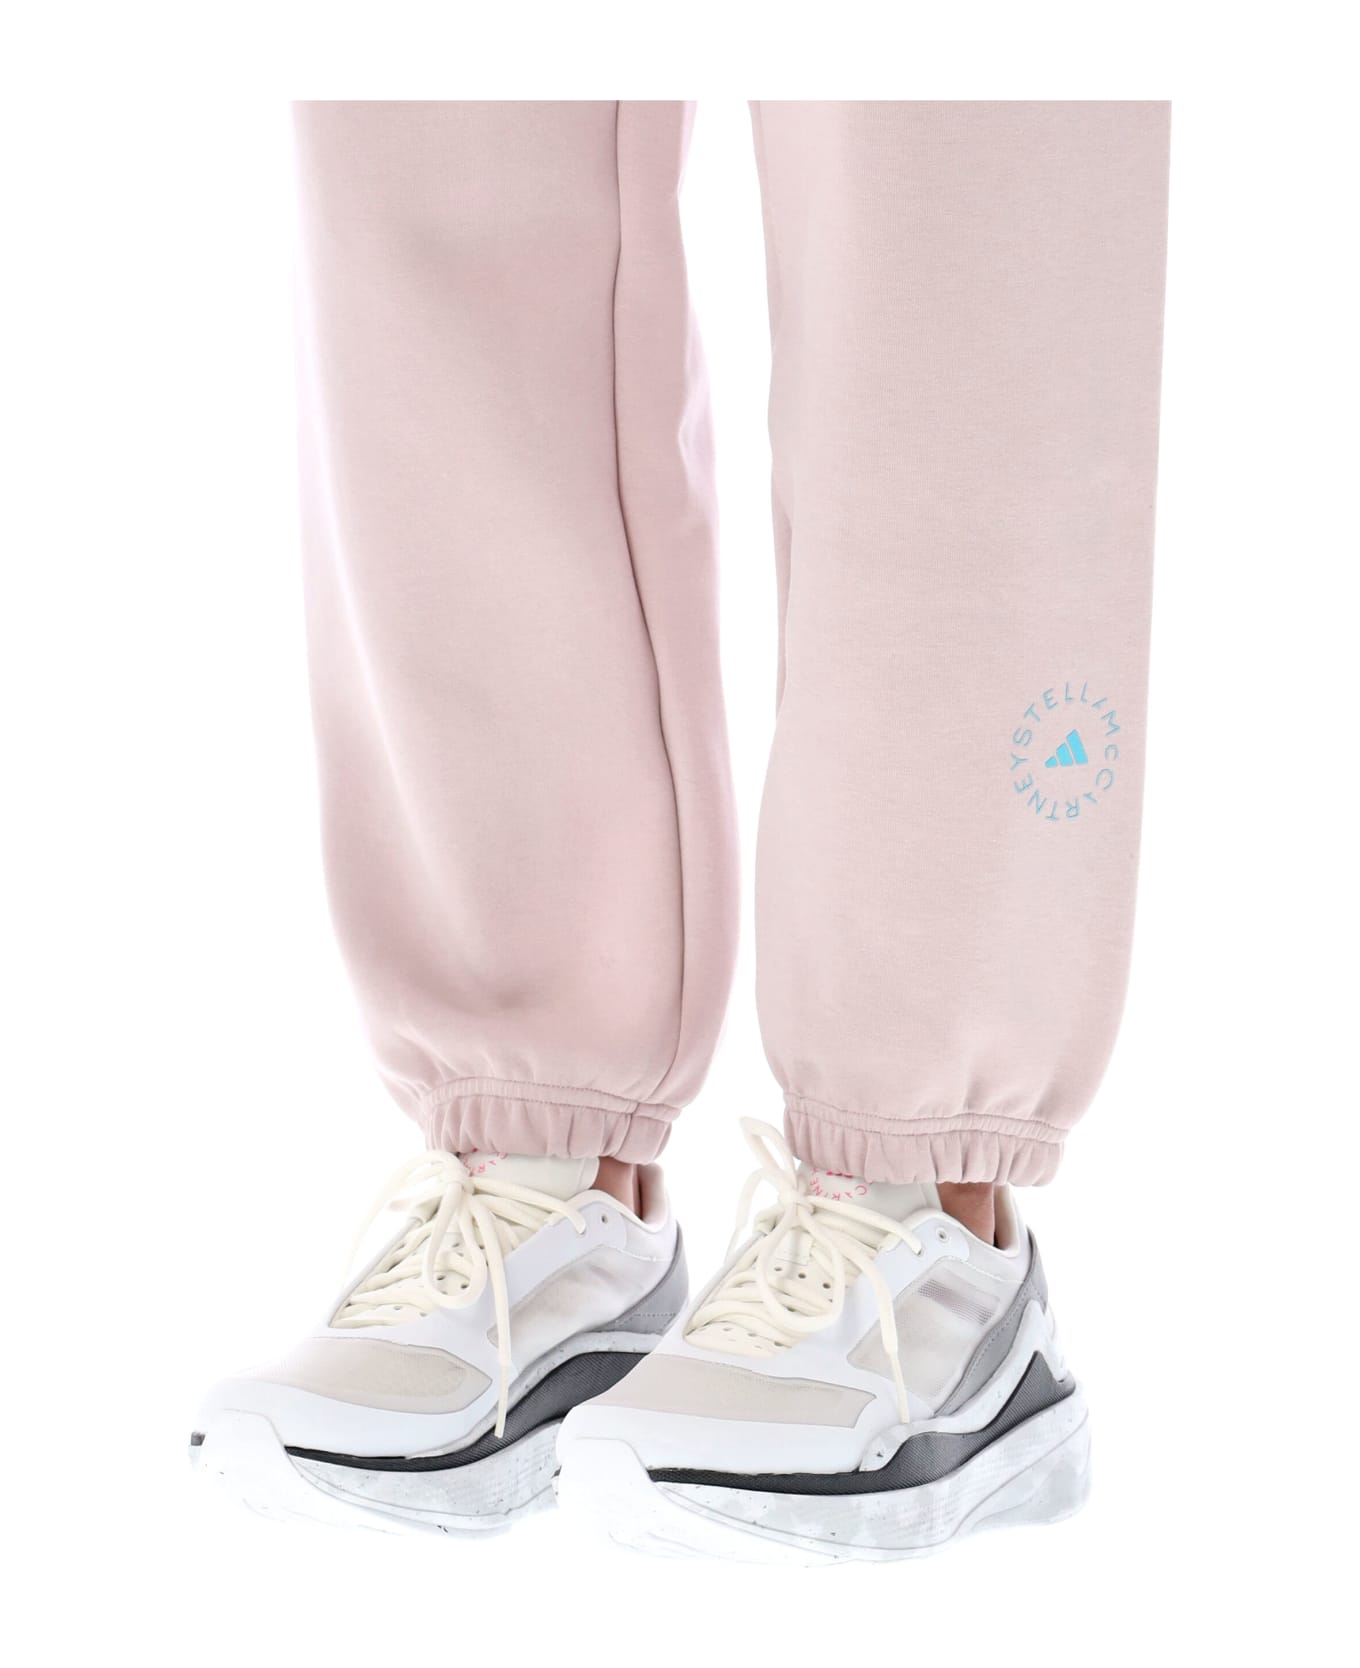 Adidas by Stella McCartney Logo Sweatpants - NEW PINK